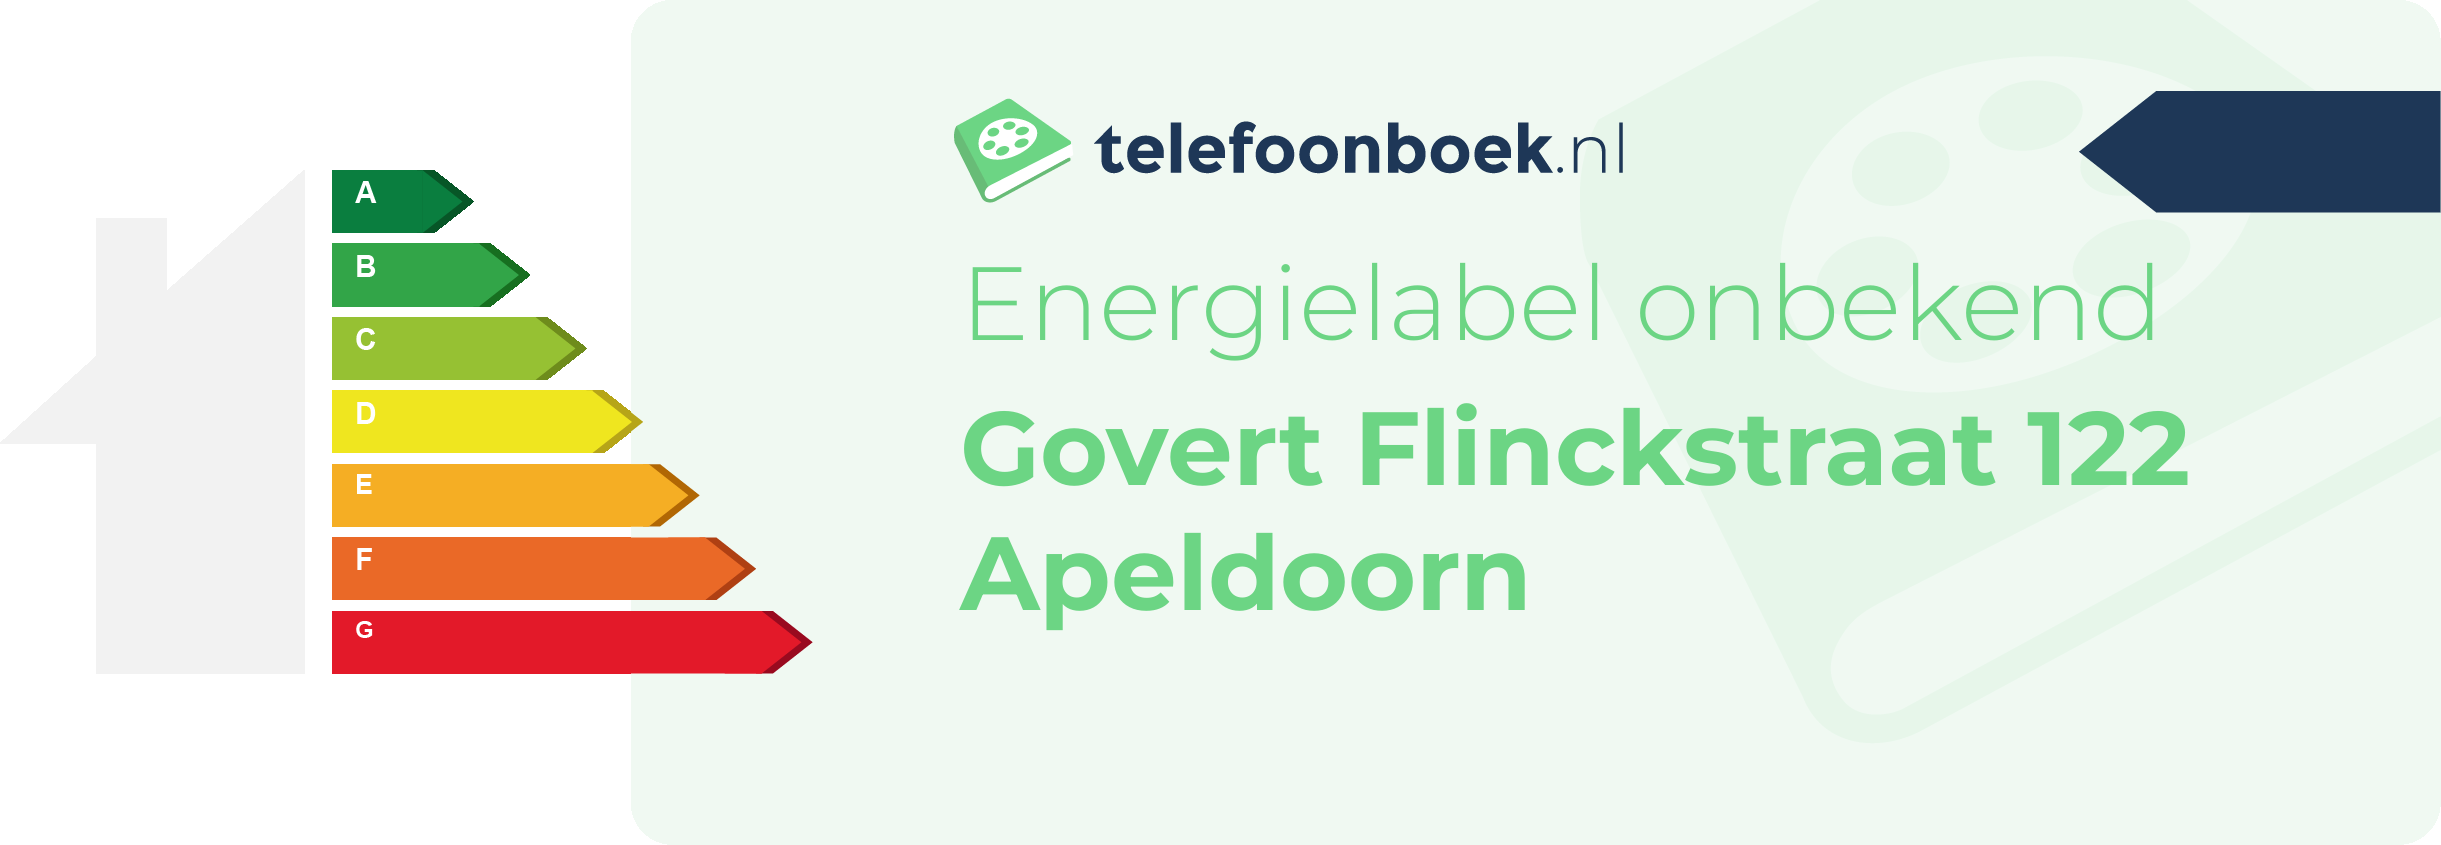 Energielabel Govert Flinckstraat 122 Apeldoorn